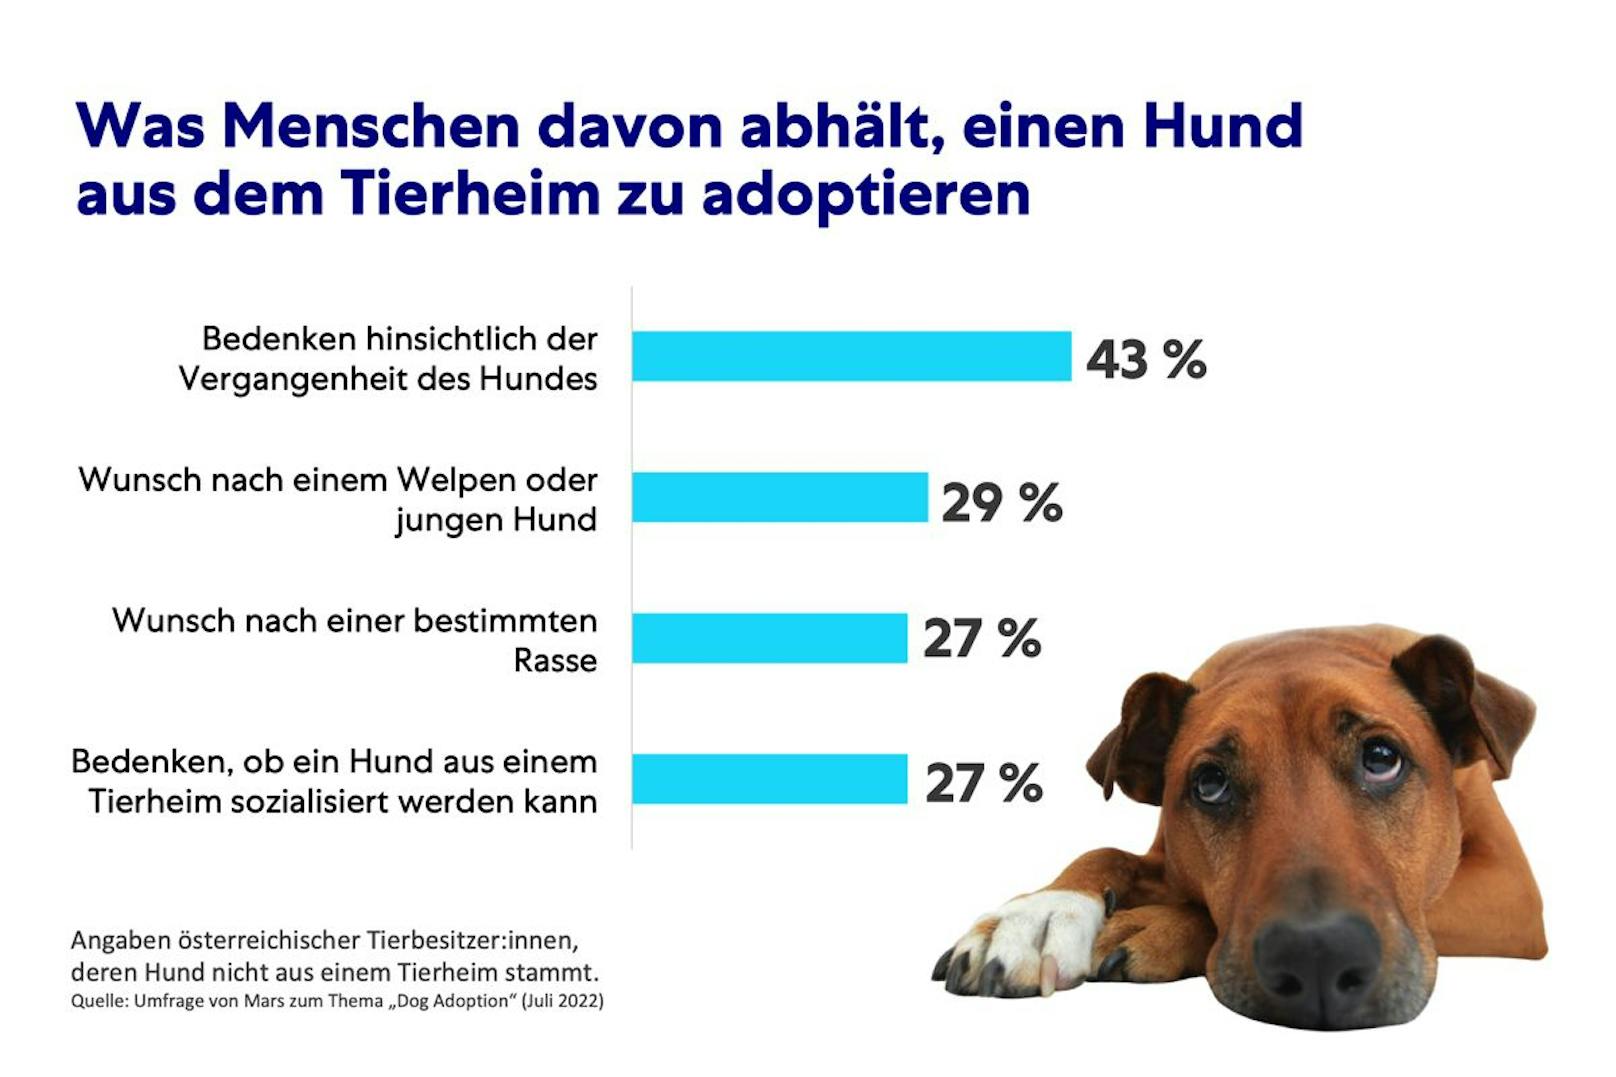 Diese Graphik zeigt leider genau auf, weshalb eine Adoption aus dem Tierheim meist scheitert. 